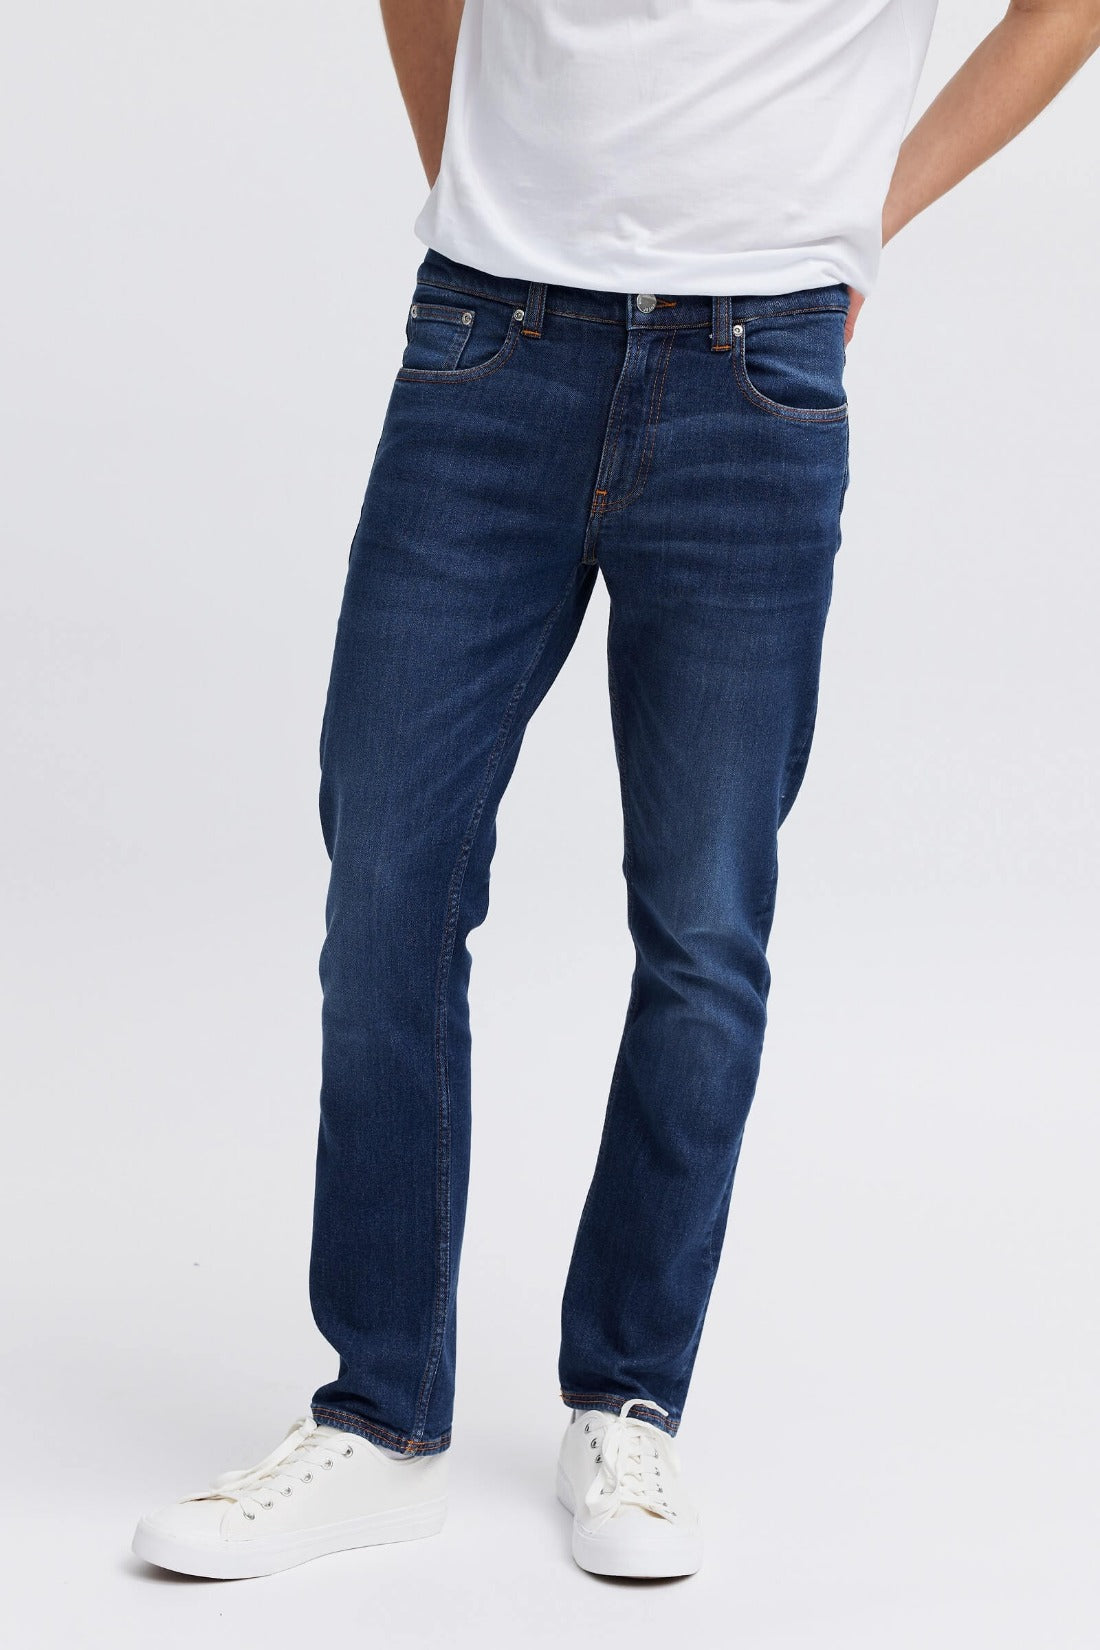 trendy denim jeans for men 